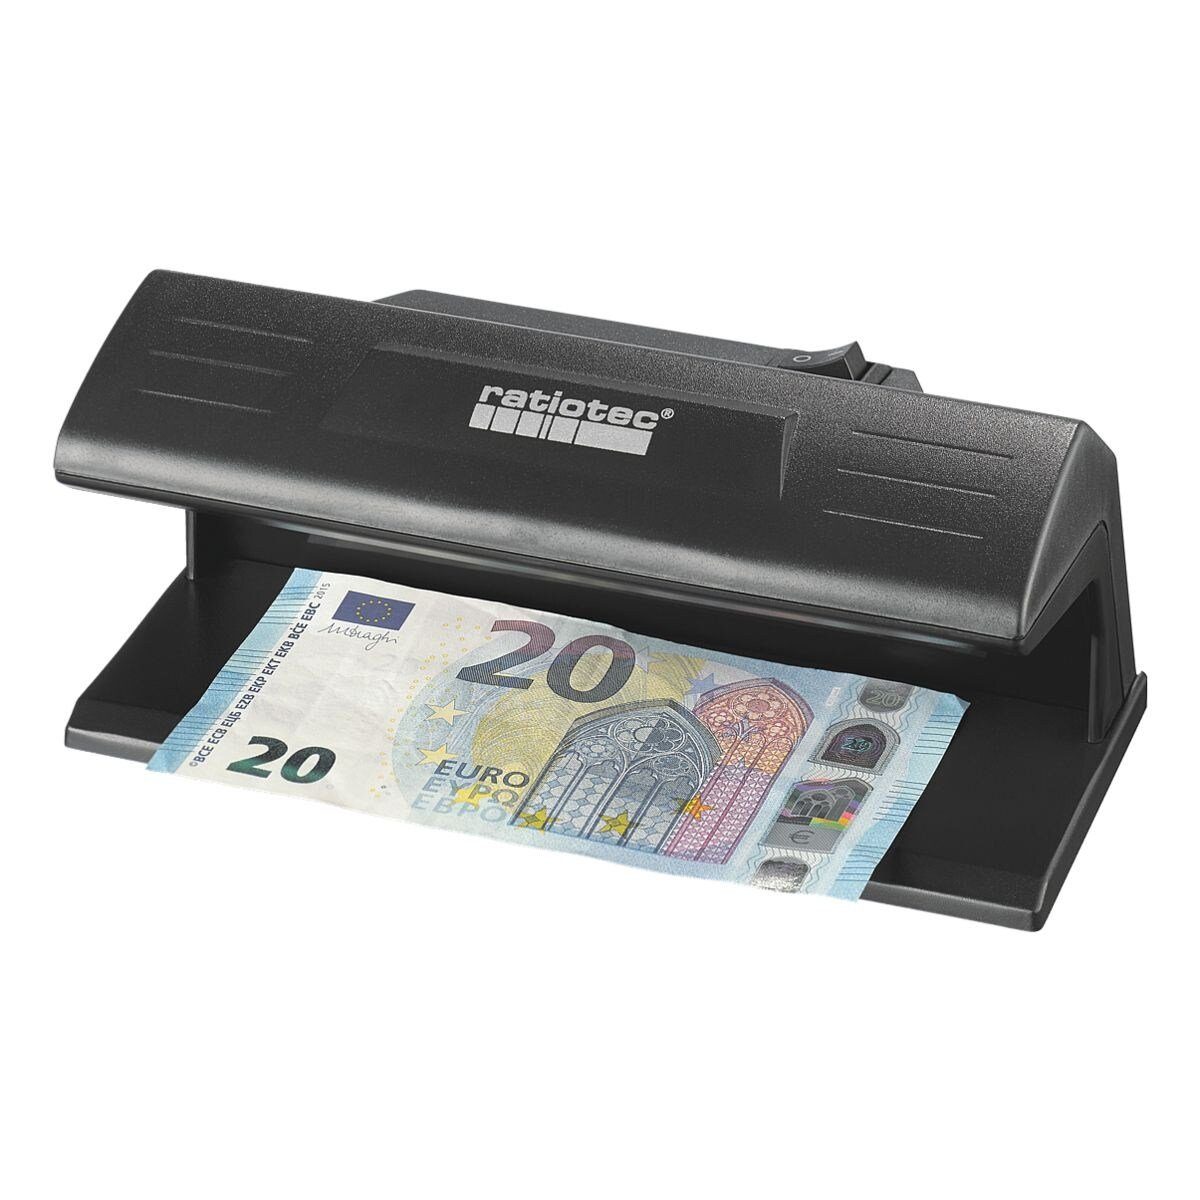 RATIOTEC Geldscheinprüfgerät Soldi 120 UV-LED, Prüfgerät für Geldscheine, Reisedokumente, offizielle Dokumente